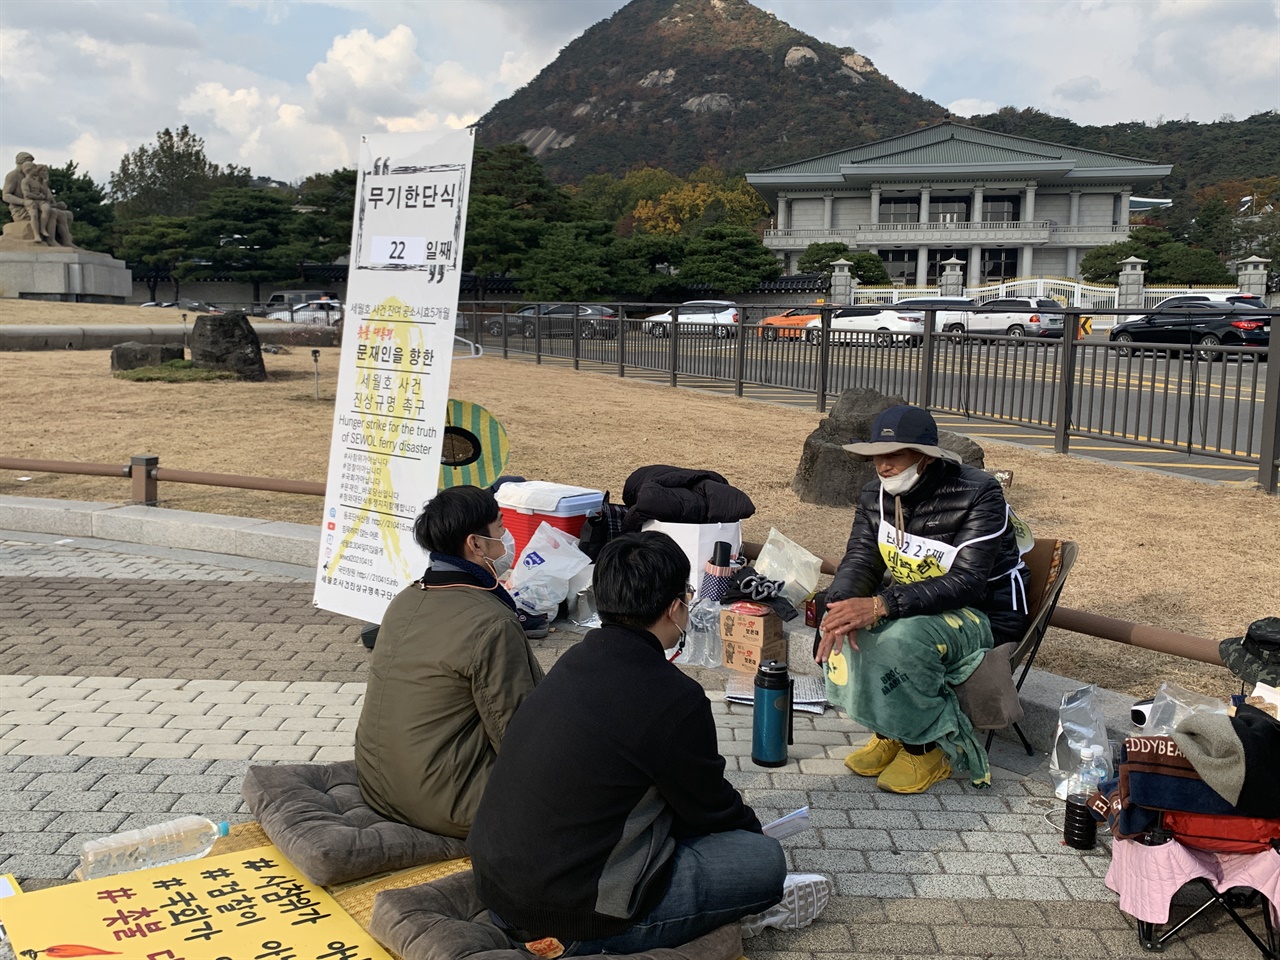 세월호진상규명촉구 단식투쟁장을 찾은 시민들과 대화중인 김성묵씨